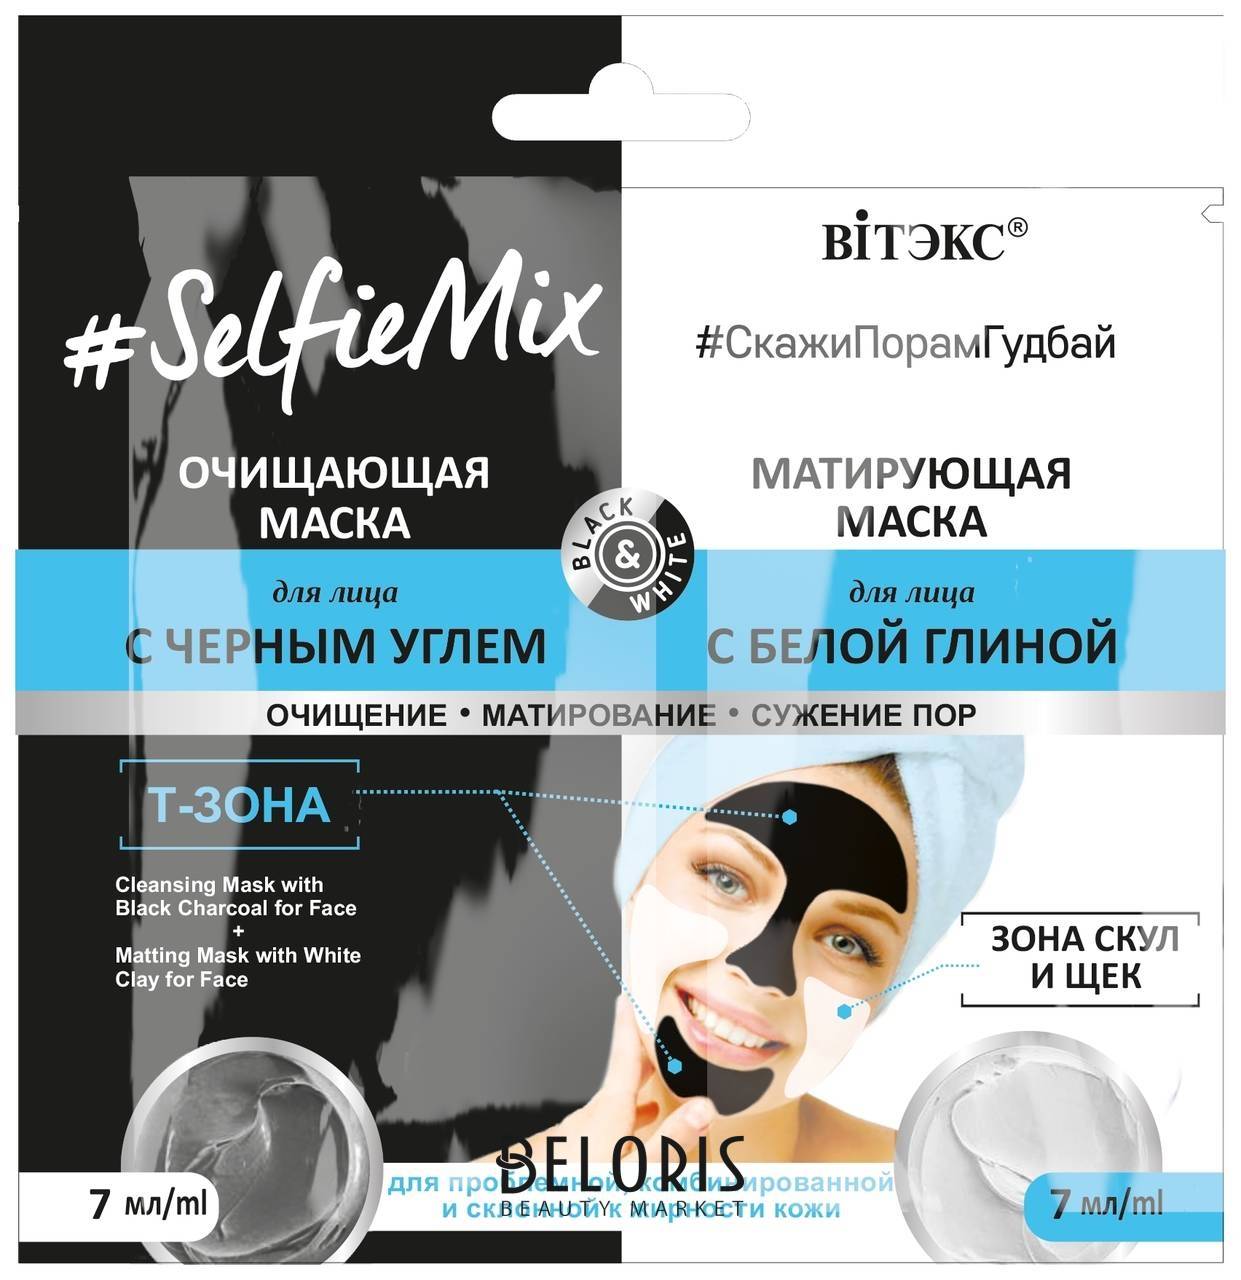 Очищающающая маска для лица с черным углем + матирующая маска для лица с белой глиной Selfiemix  Белита - Витекс Selfiemix